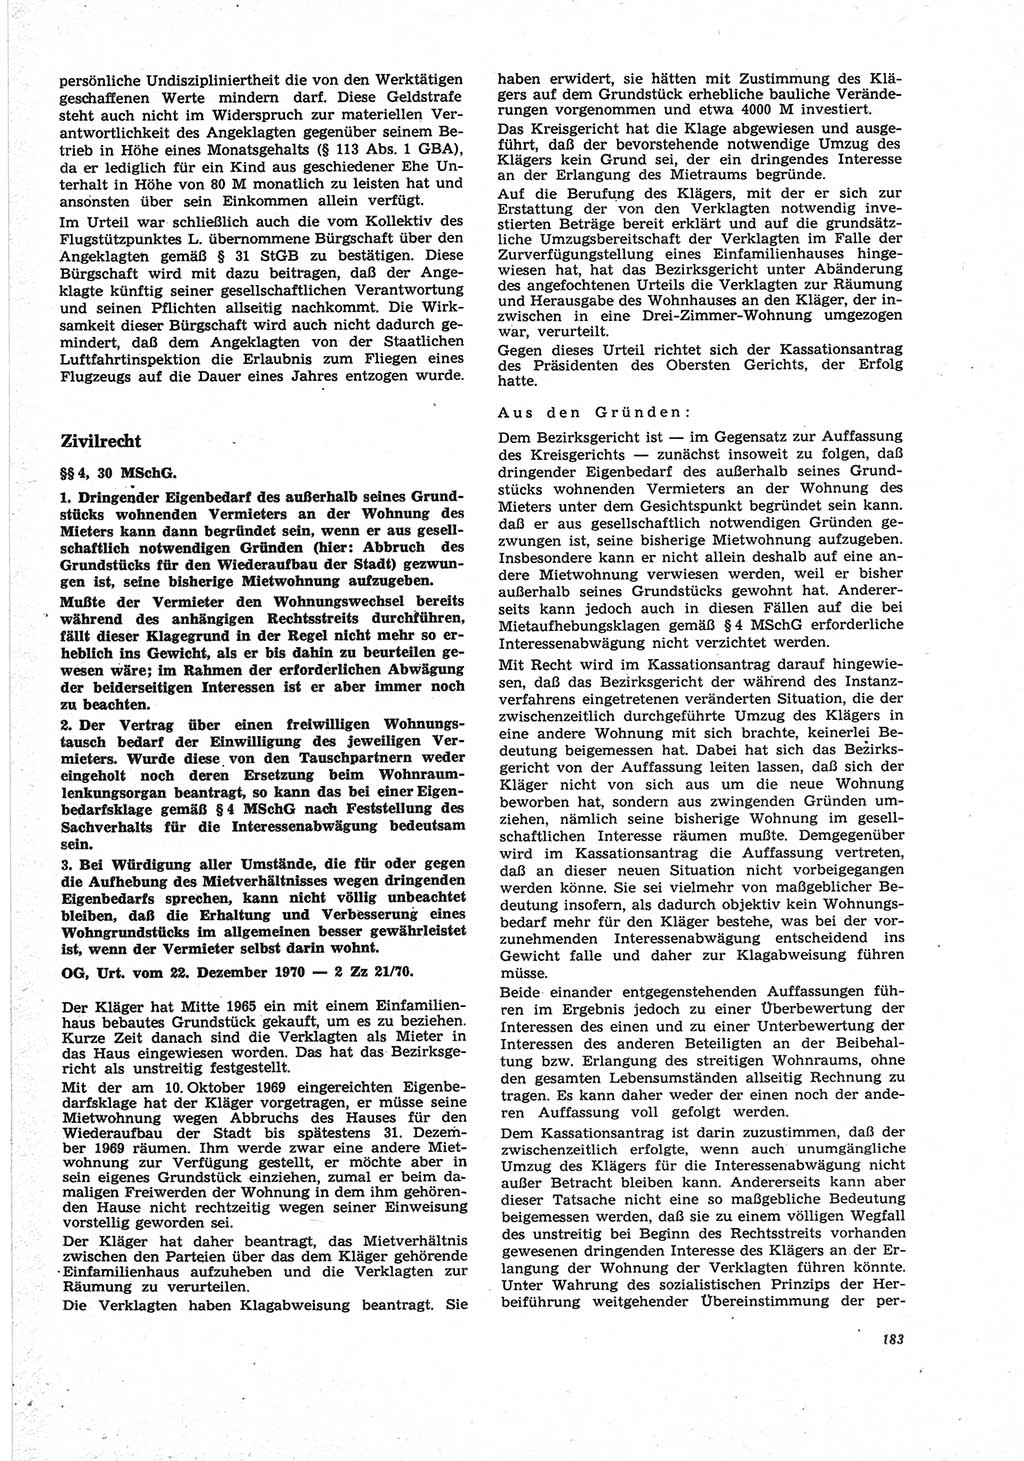 Neue Justiz (NJ), Zeitschrift für Recht und Rechtswissenschaft [Deutsche Demokratische Republik (DDR)], 25. Jahrgang 1971, Seite 183 (NJ DDR 1971, S. 183)